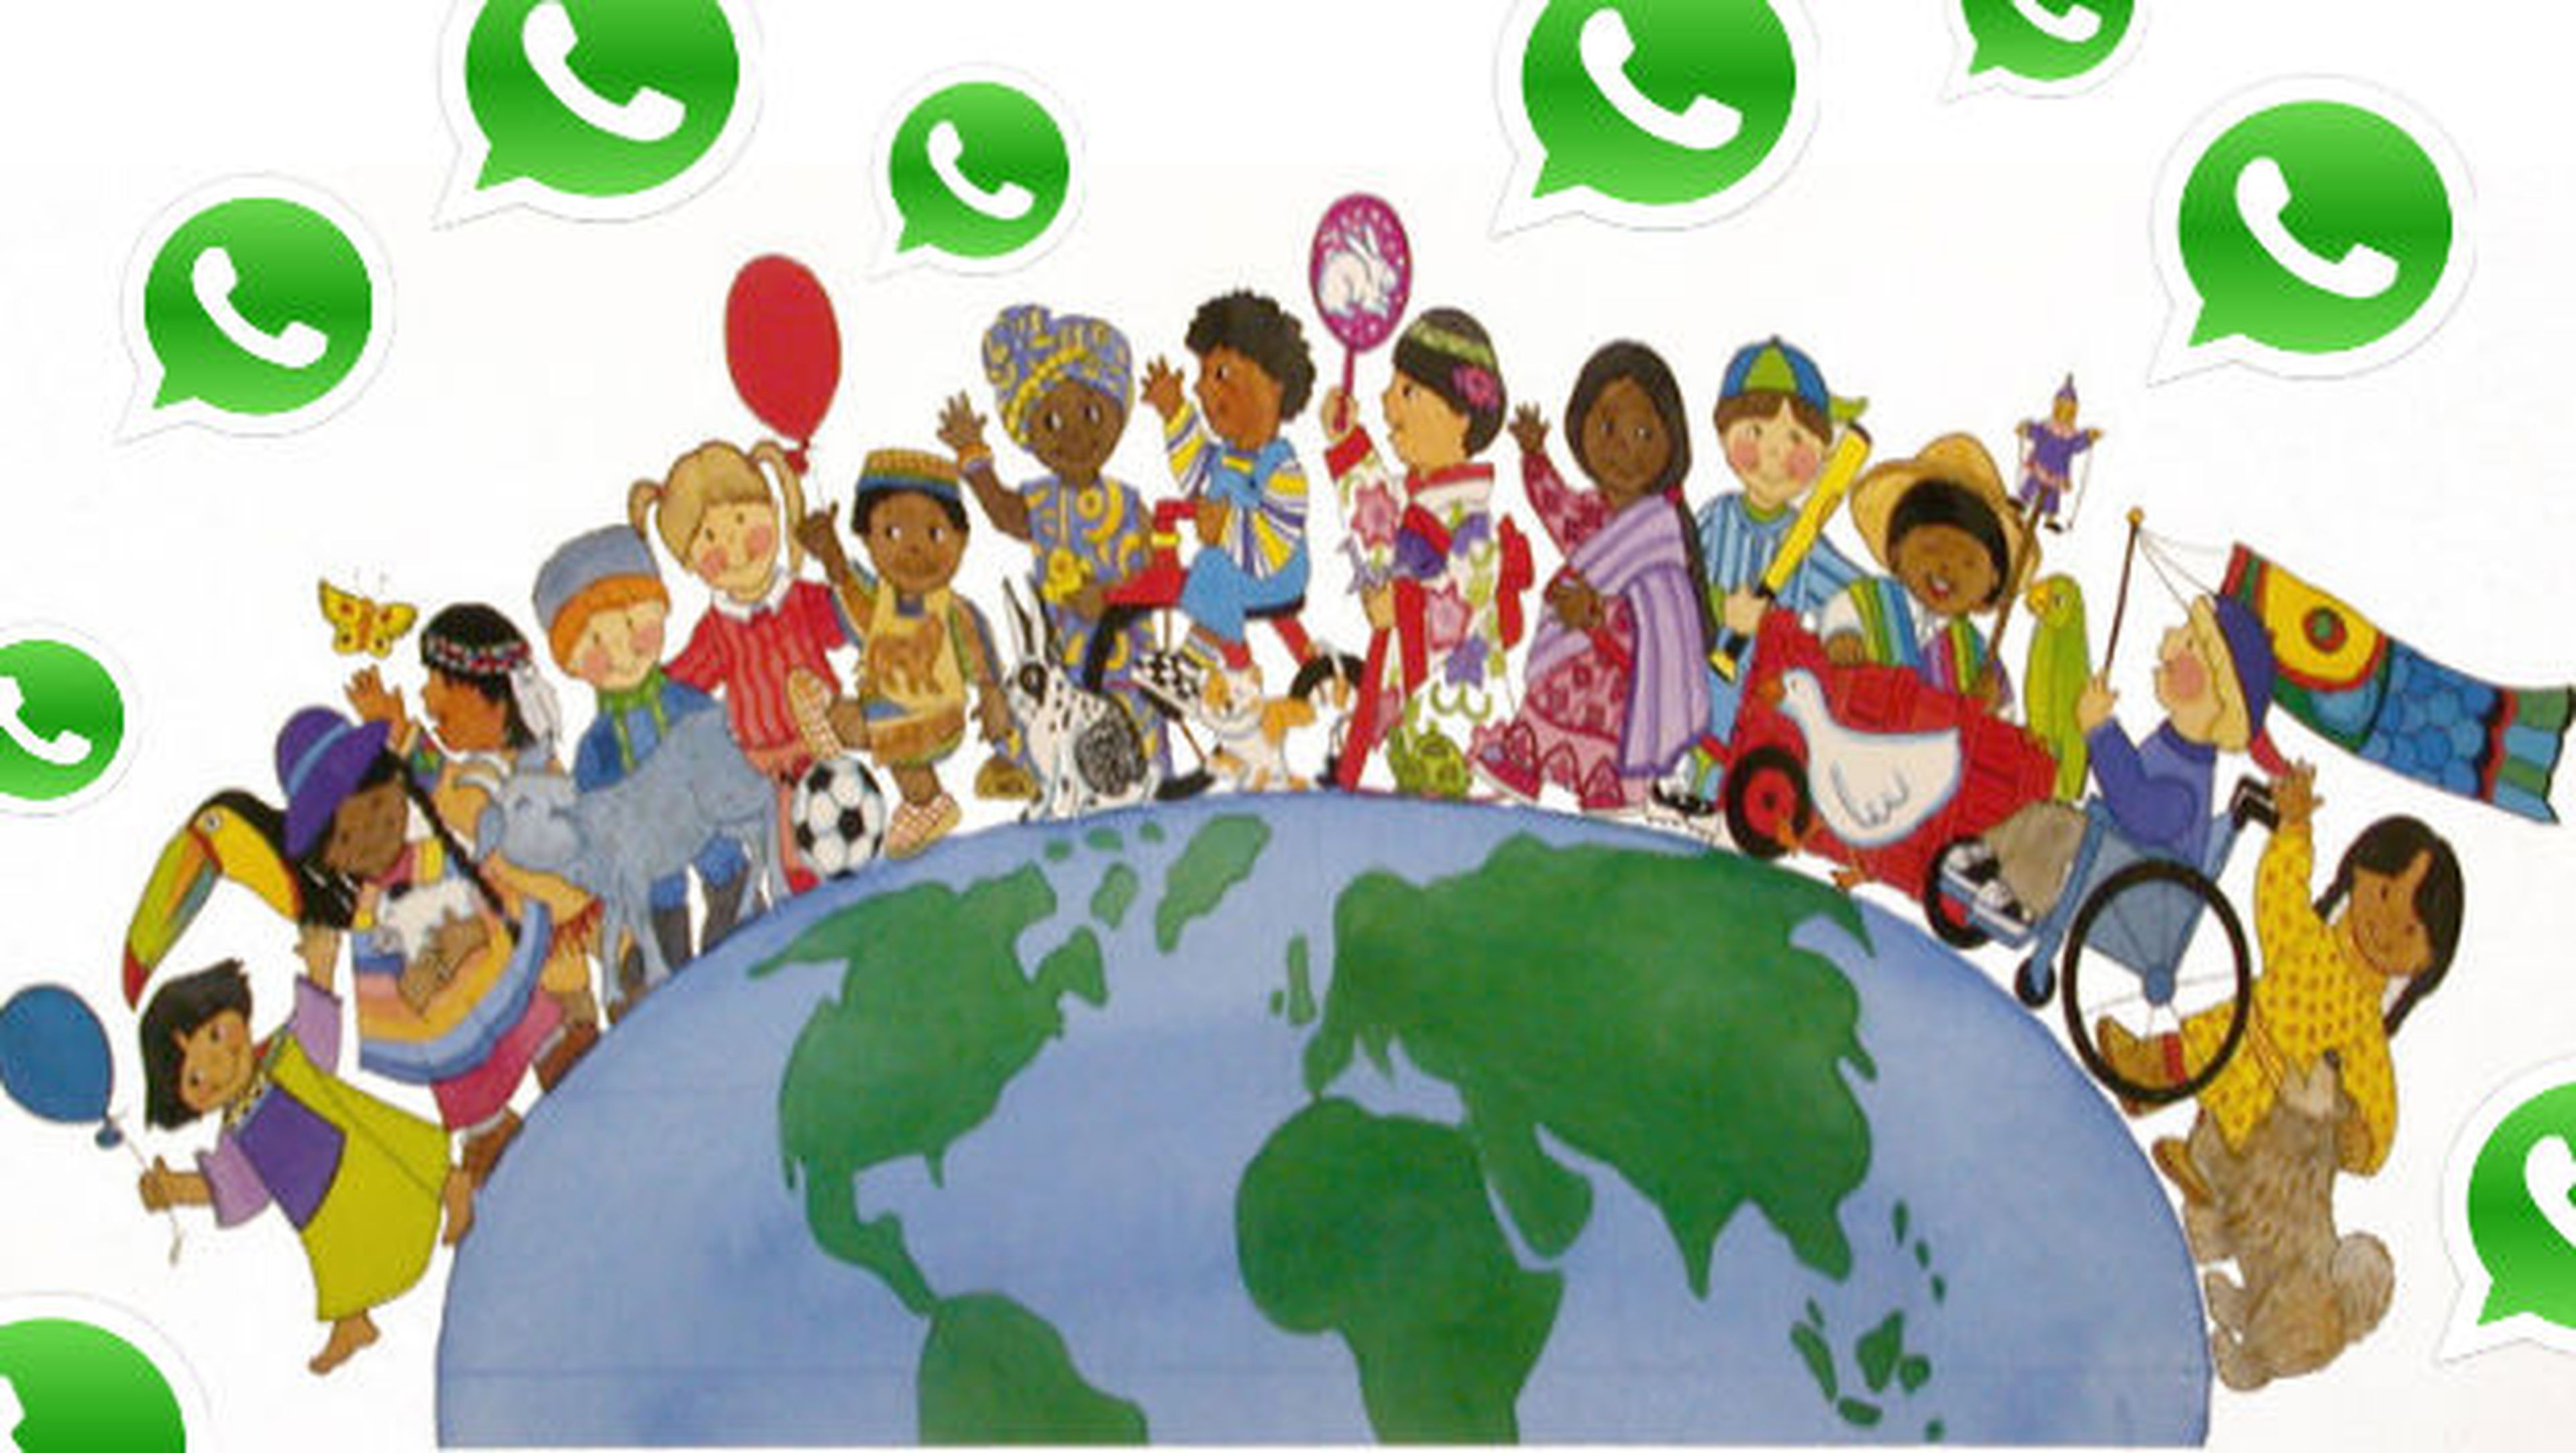 WhatsApp continúa sumando usuarios alrededor del mundo